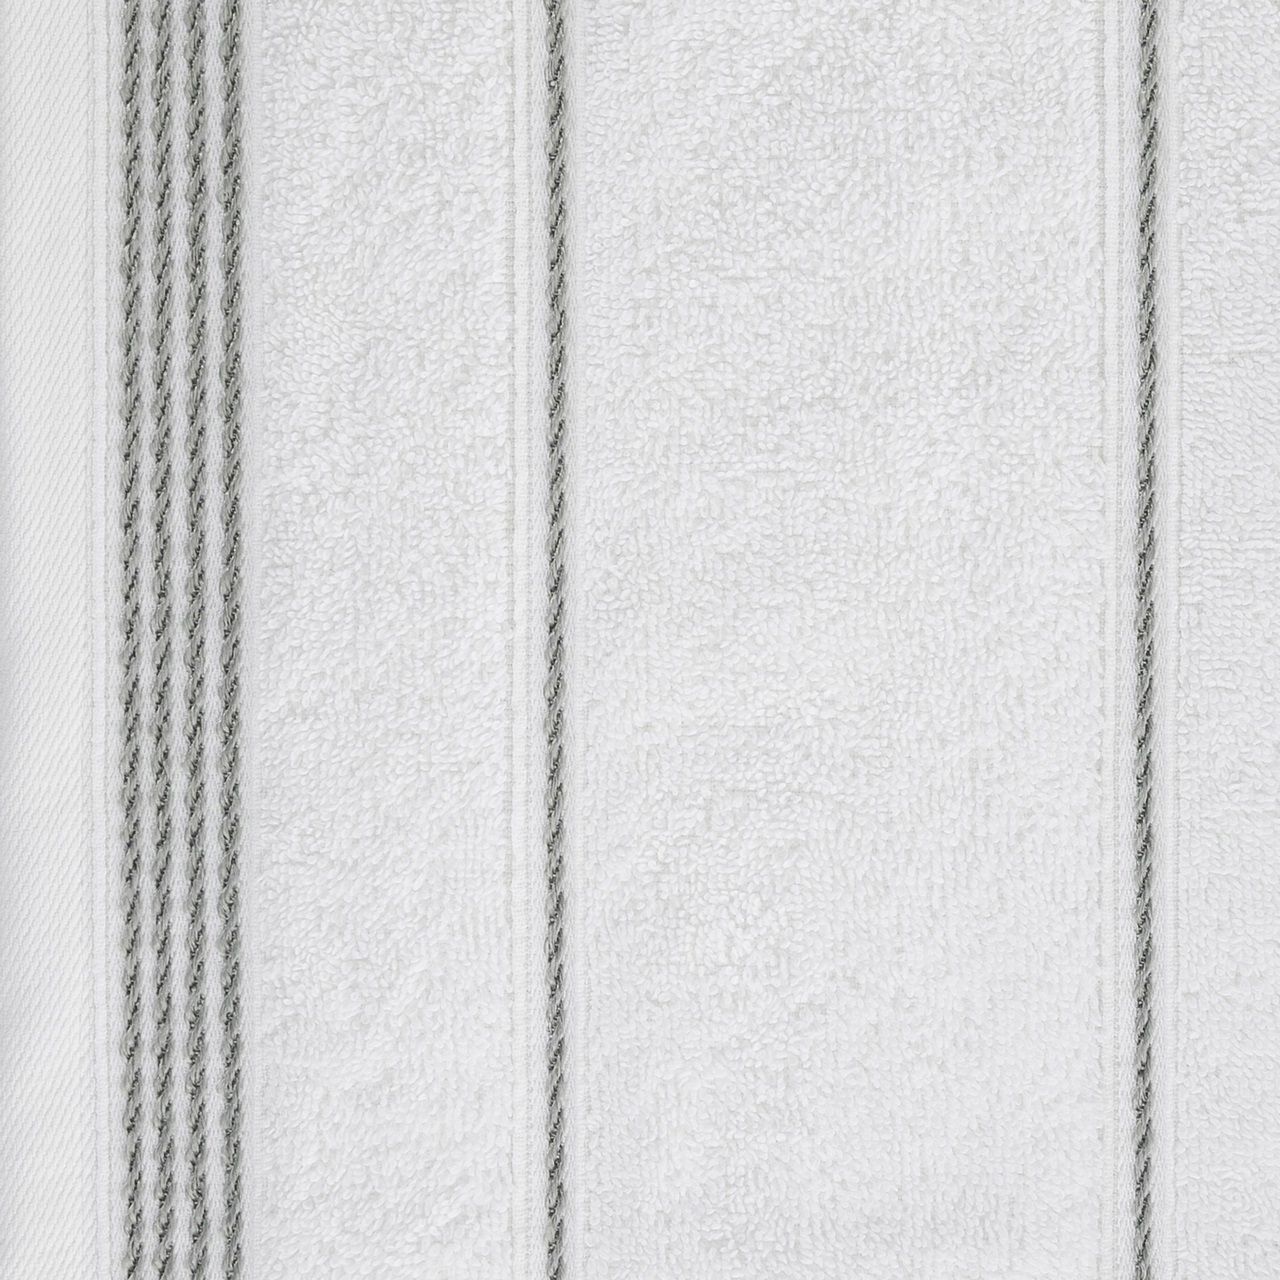 Ręcznik Mira 50x90 biały 01 frotte 500 g/m2